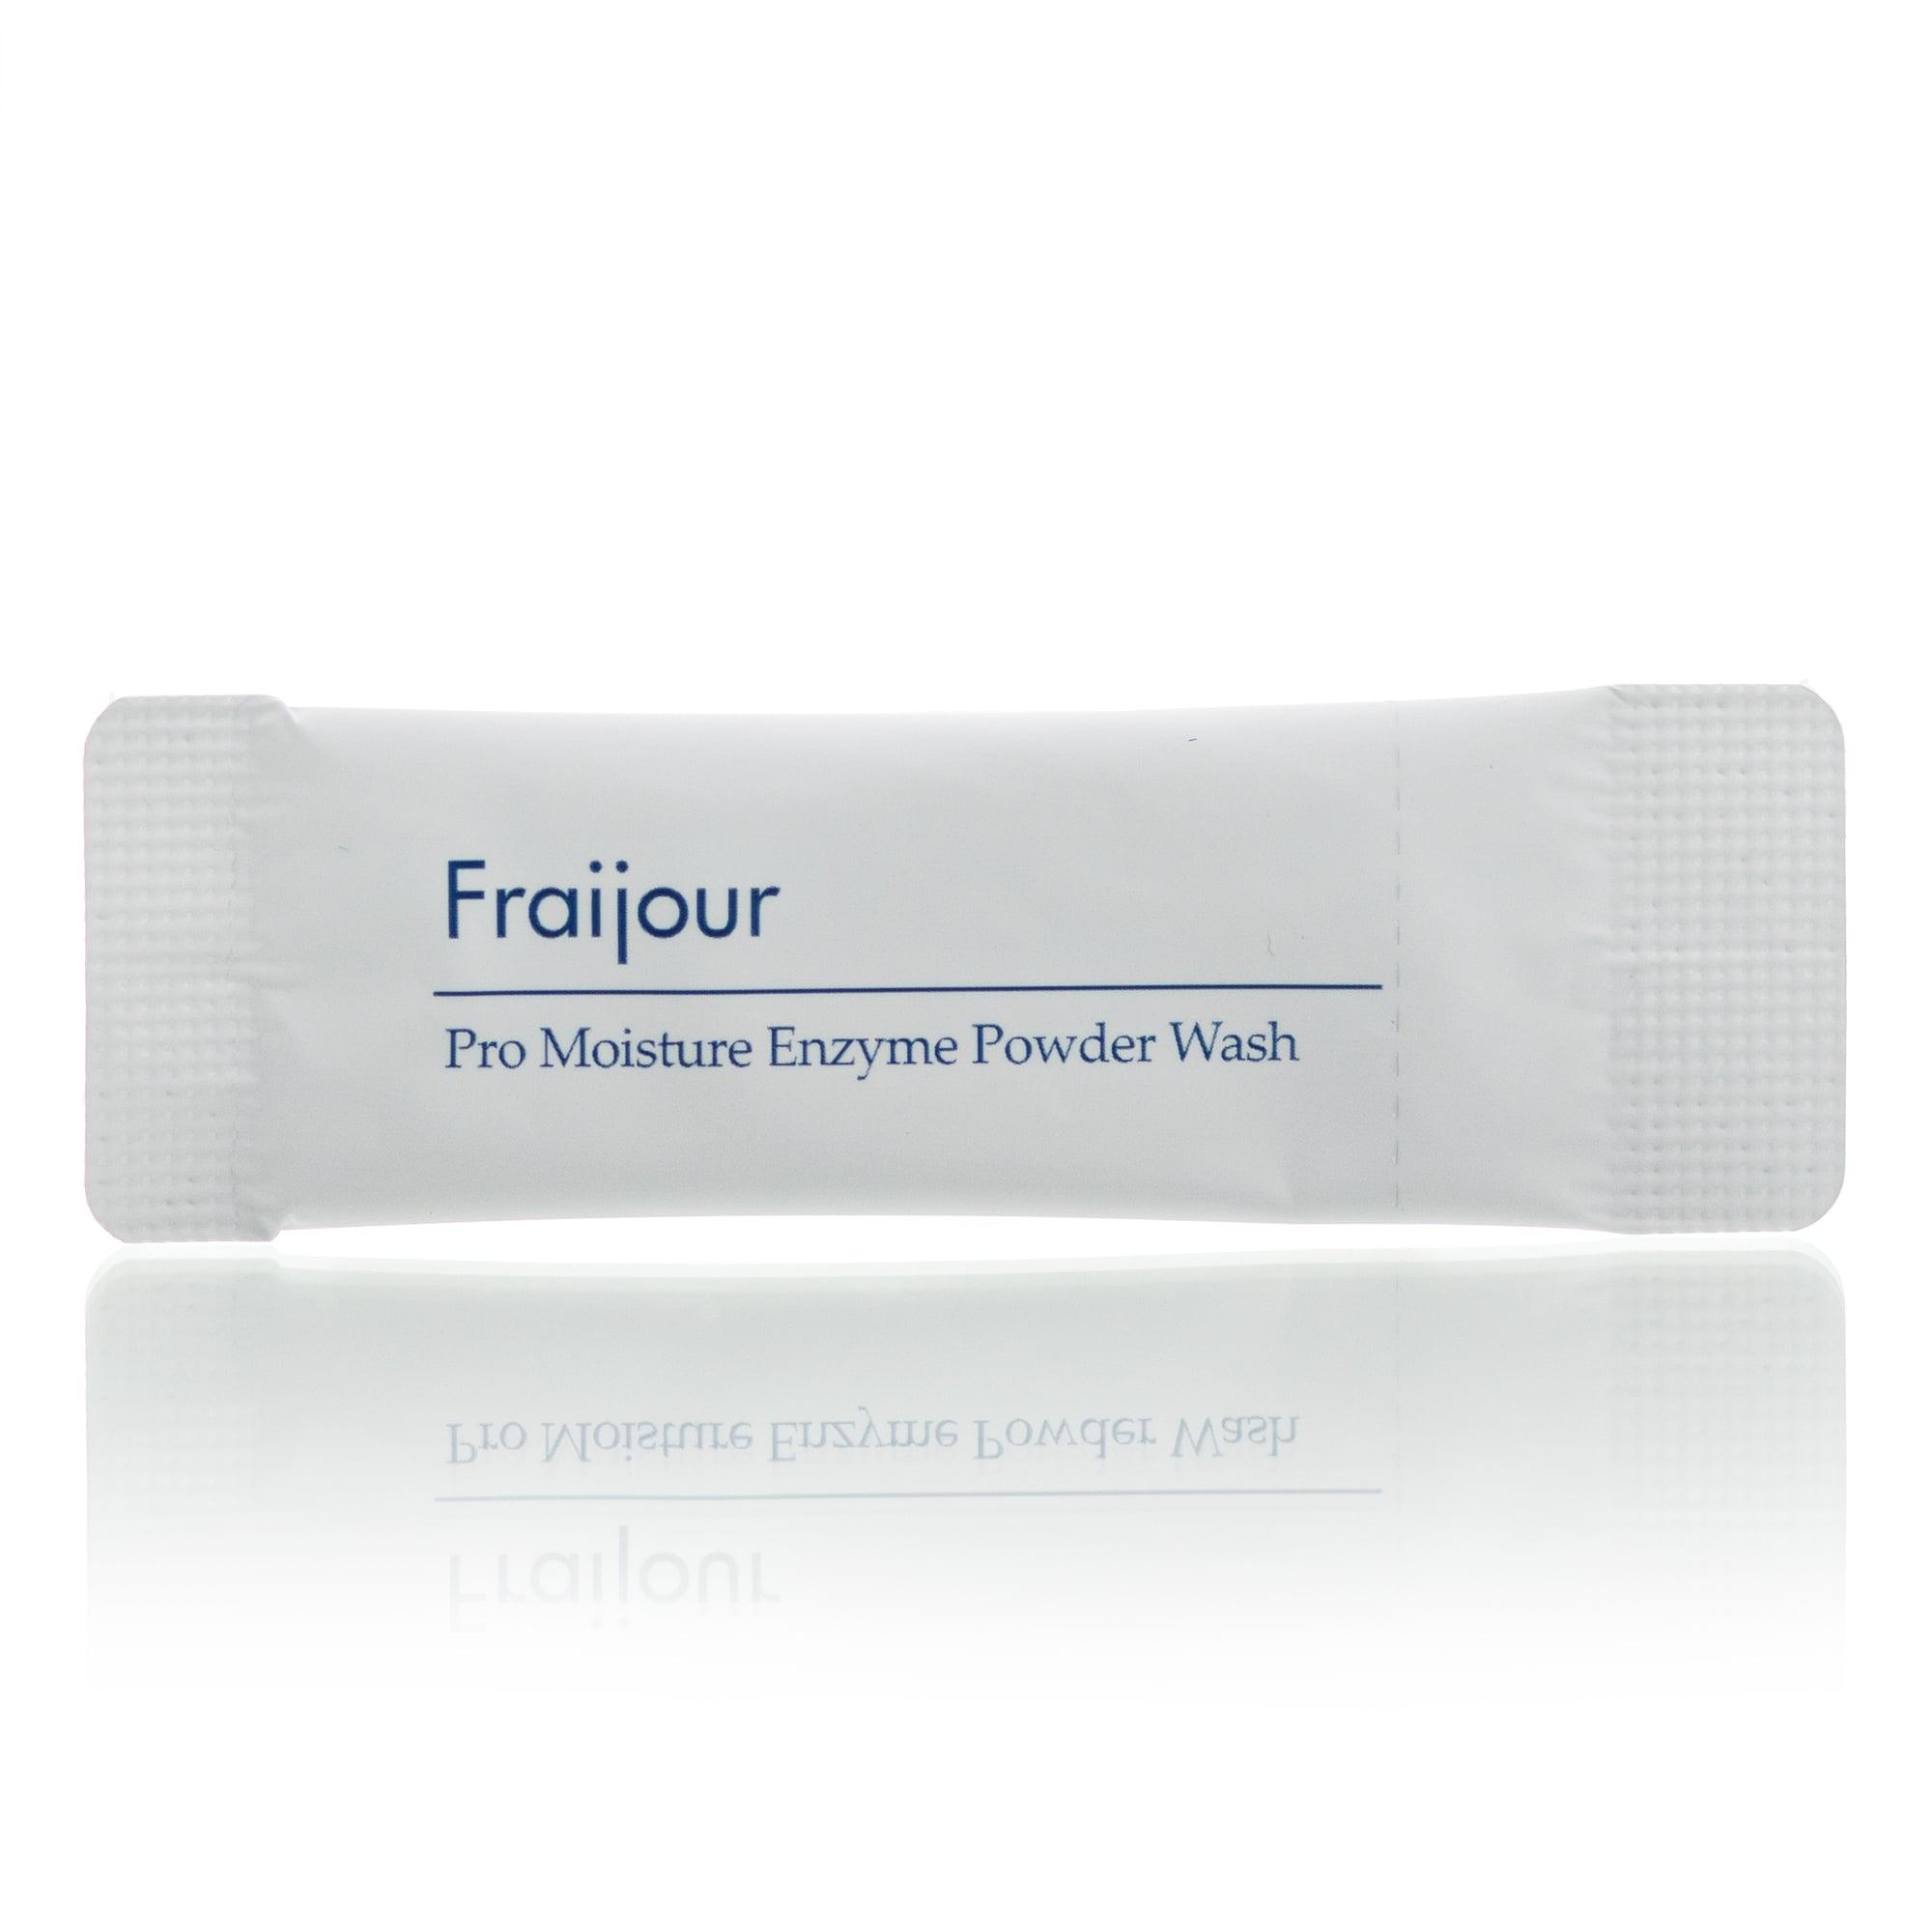 Очищающая энзимная пудра Fraijour Pro Moisture Enzyme Powder Wash 1 шт.